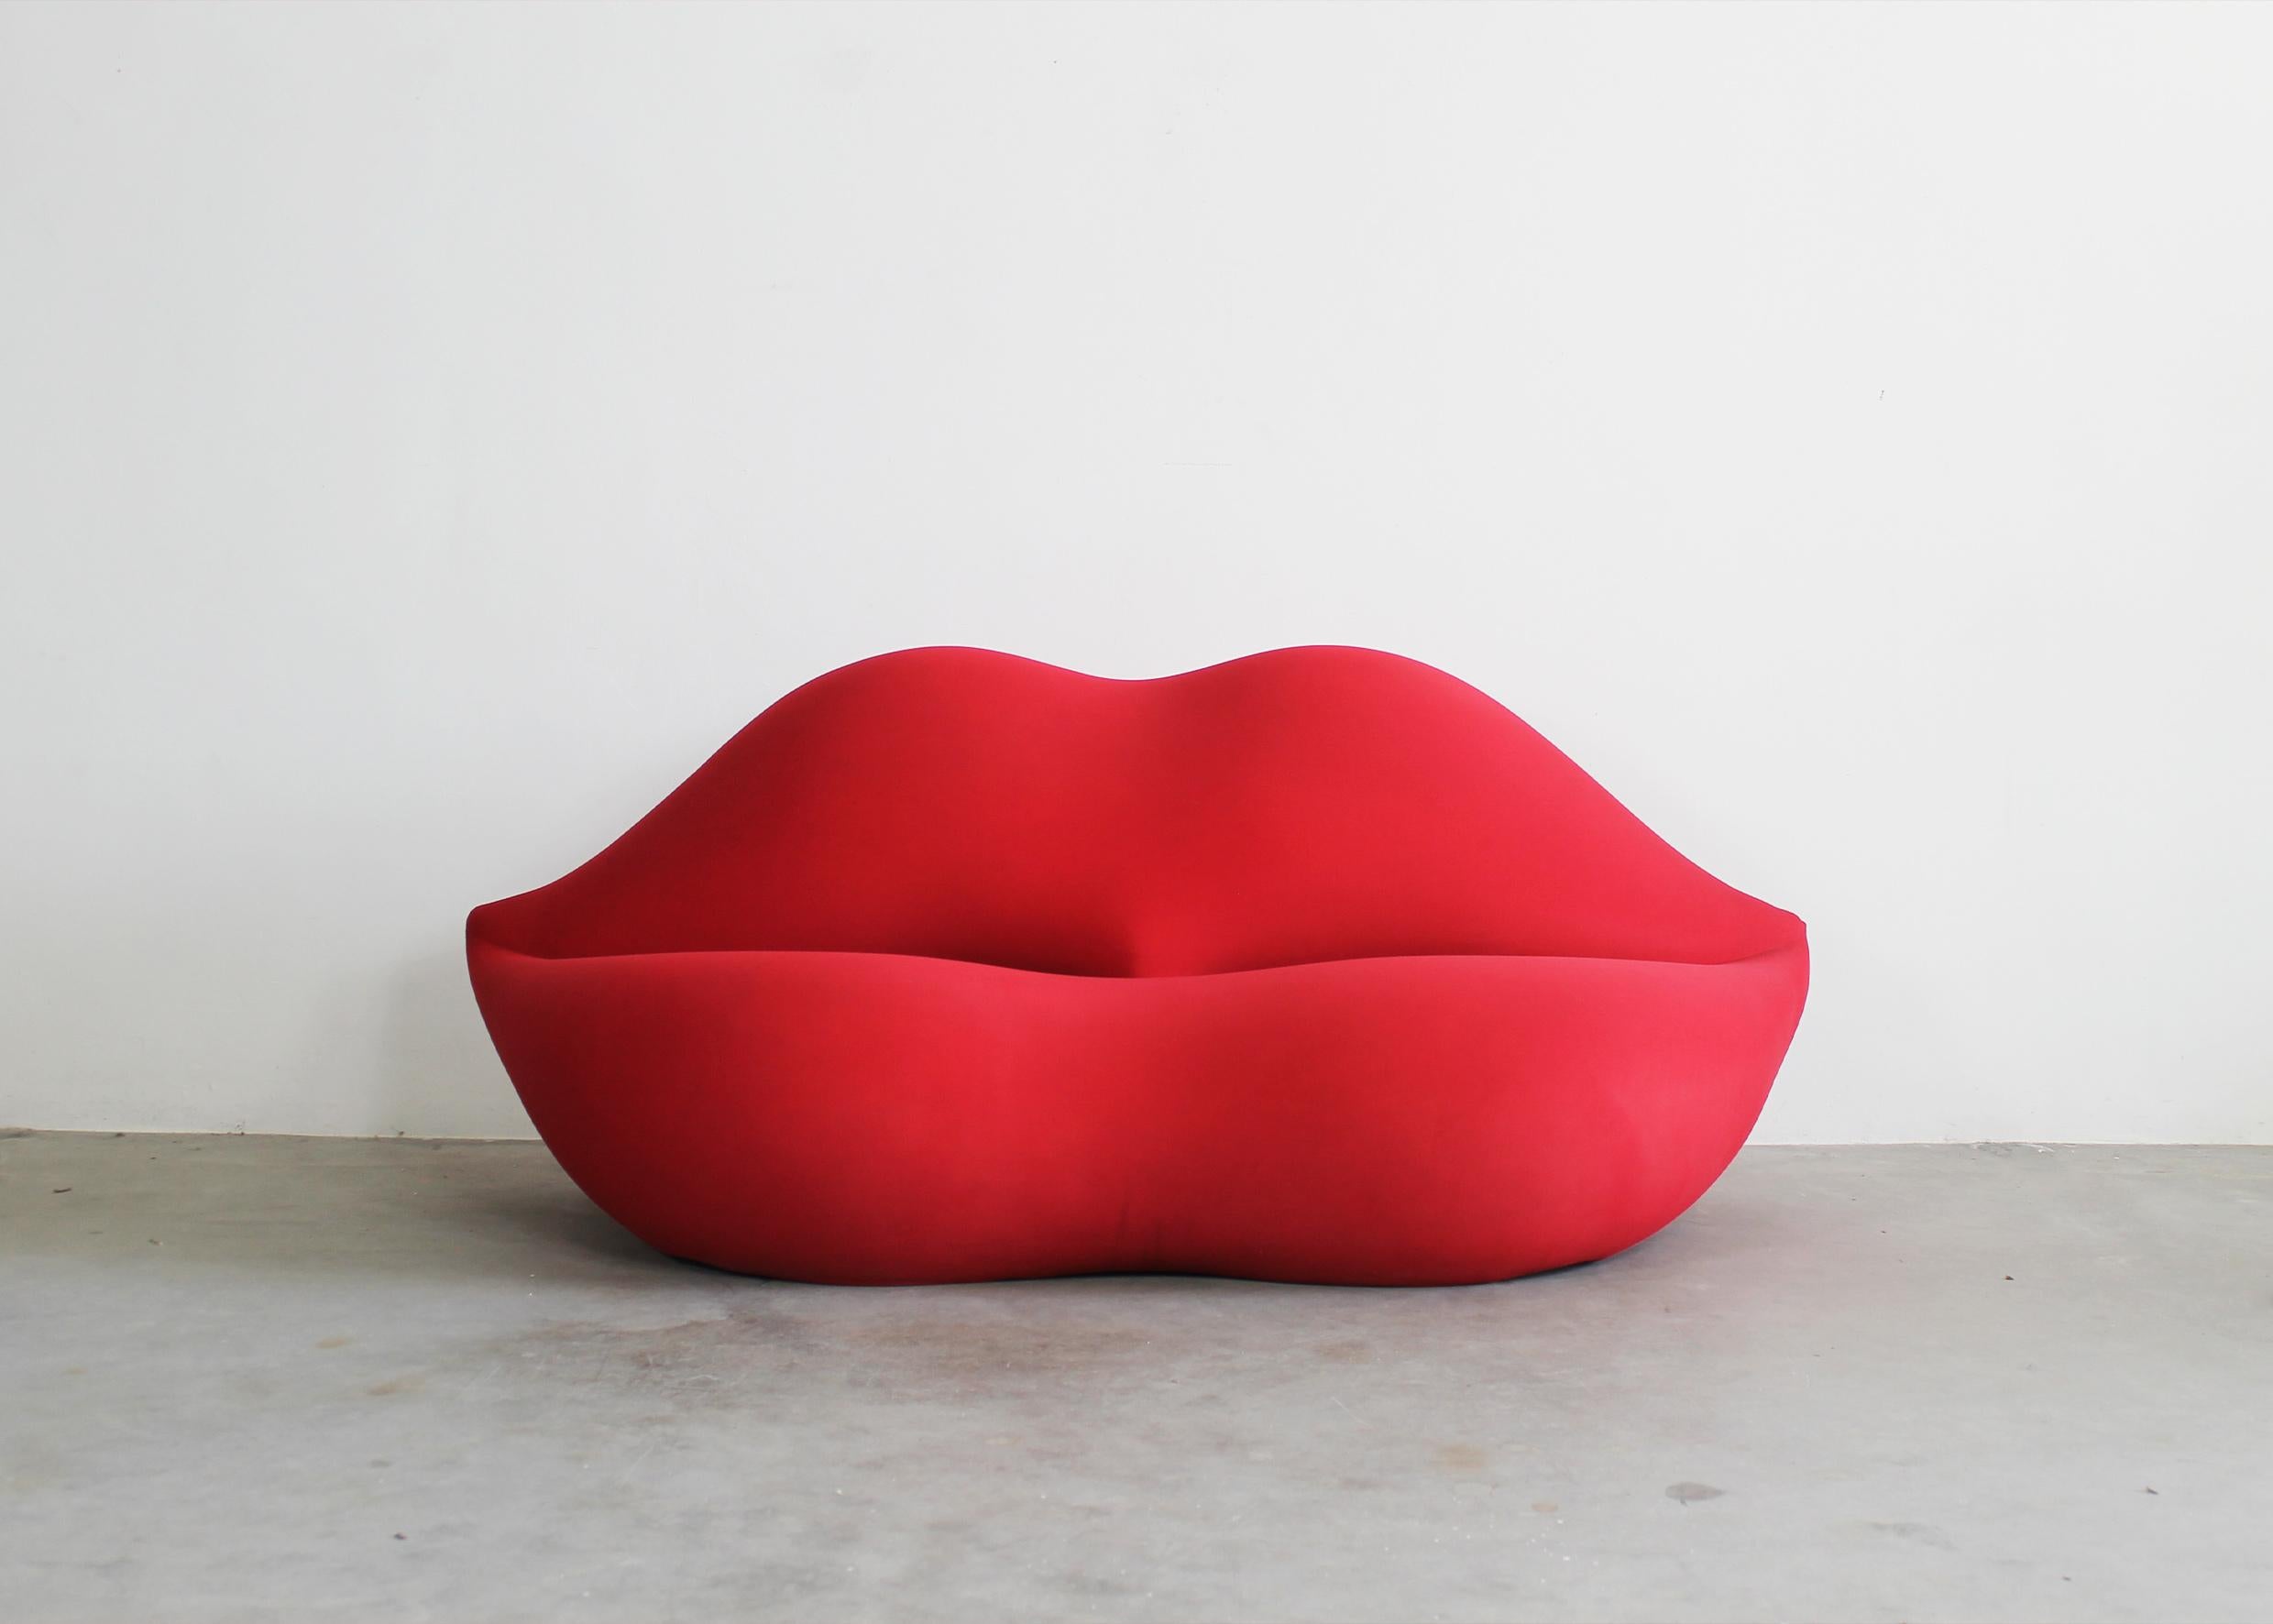 Bocca ou canapé Marilyn avec structure en mousse de polyuréthane expansé recouverte de tissu rouge, la housse est entièrement déhoussable.
Ce canapé a été conçu par Studio 65 et produit par Gufram dans les années 1970. 

Ce canapé iconique en forme